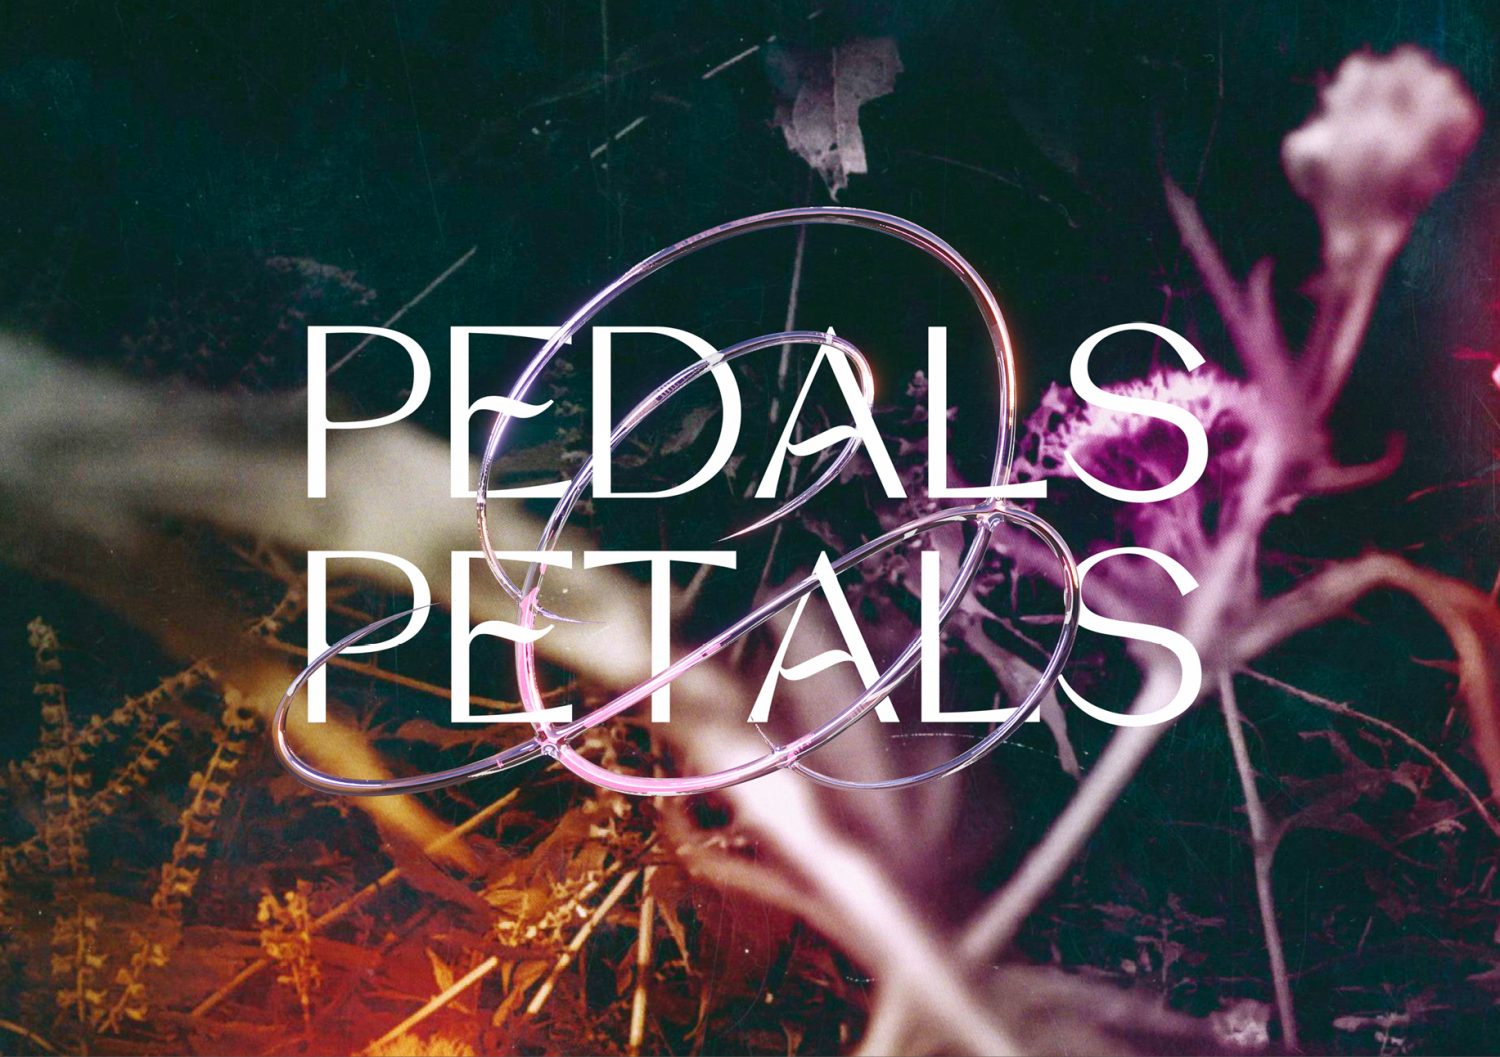 Pedals & Petals  